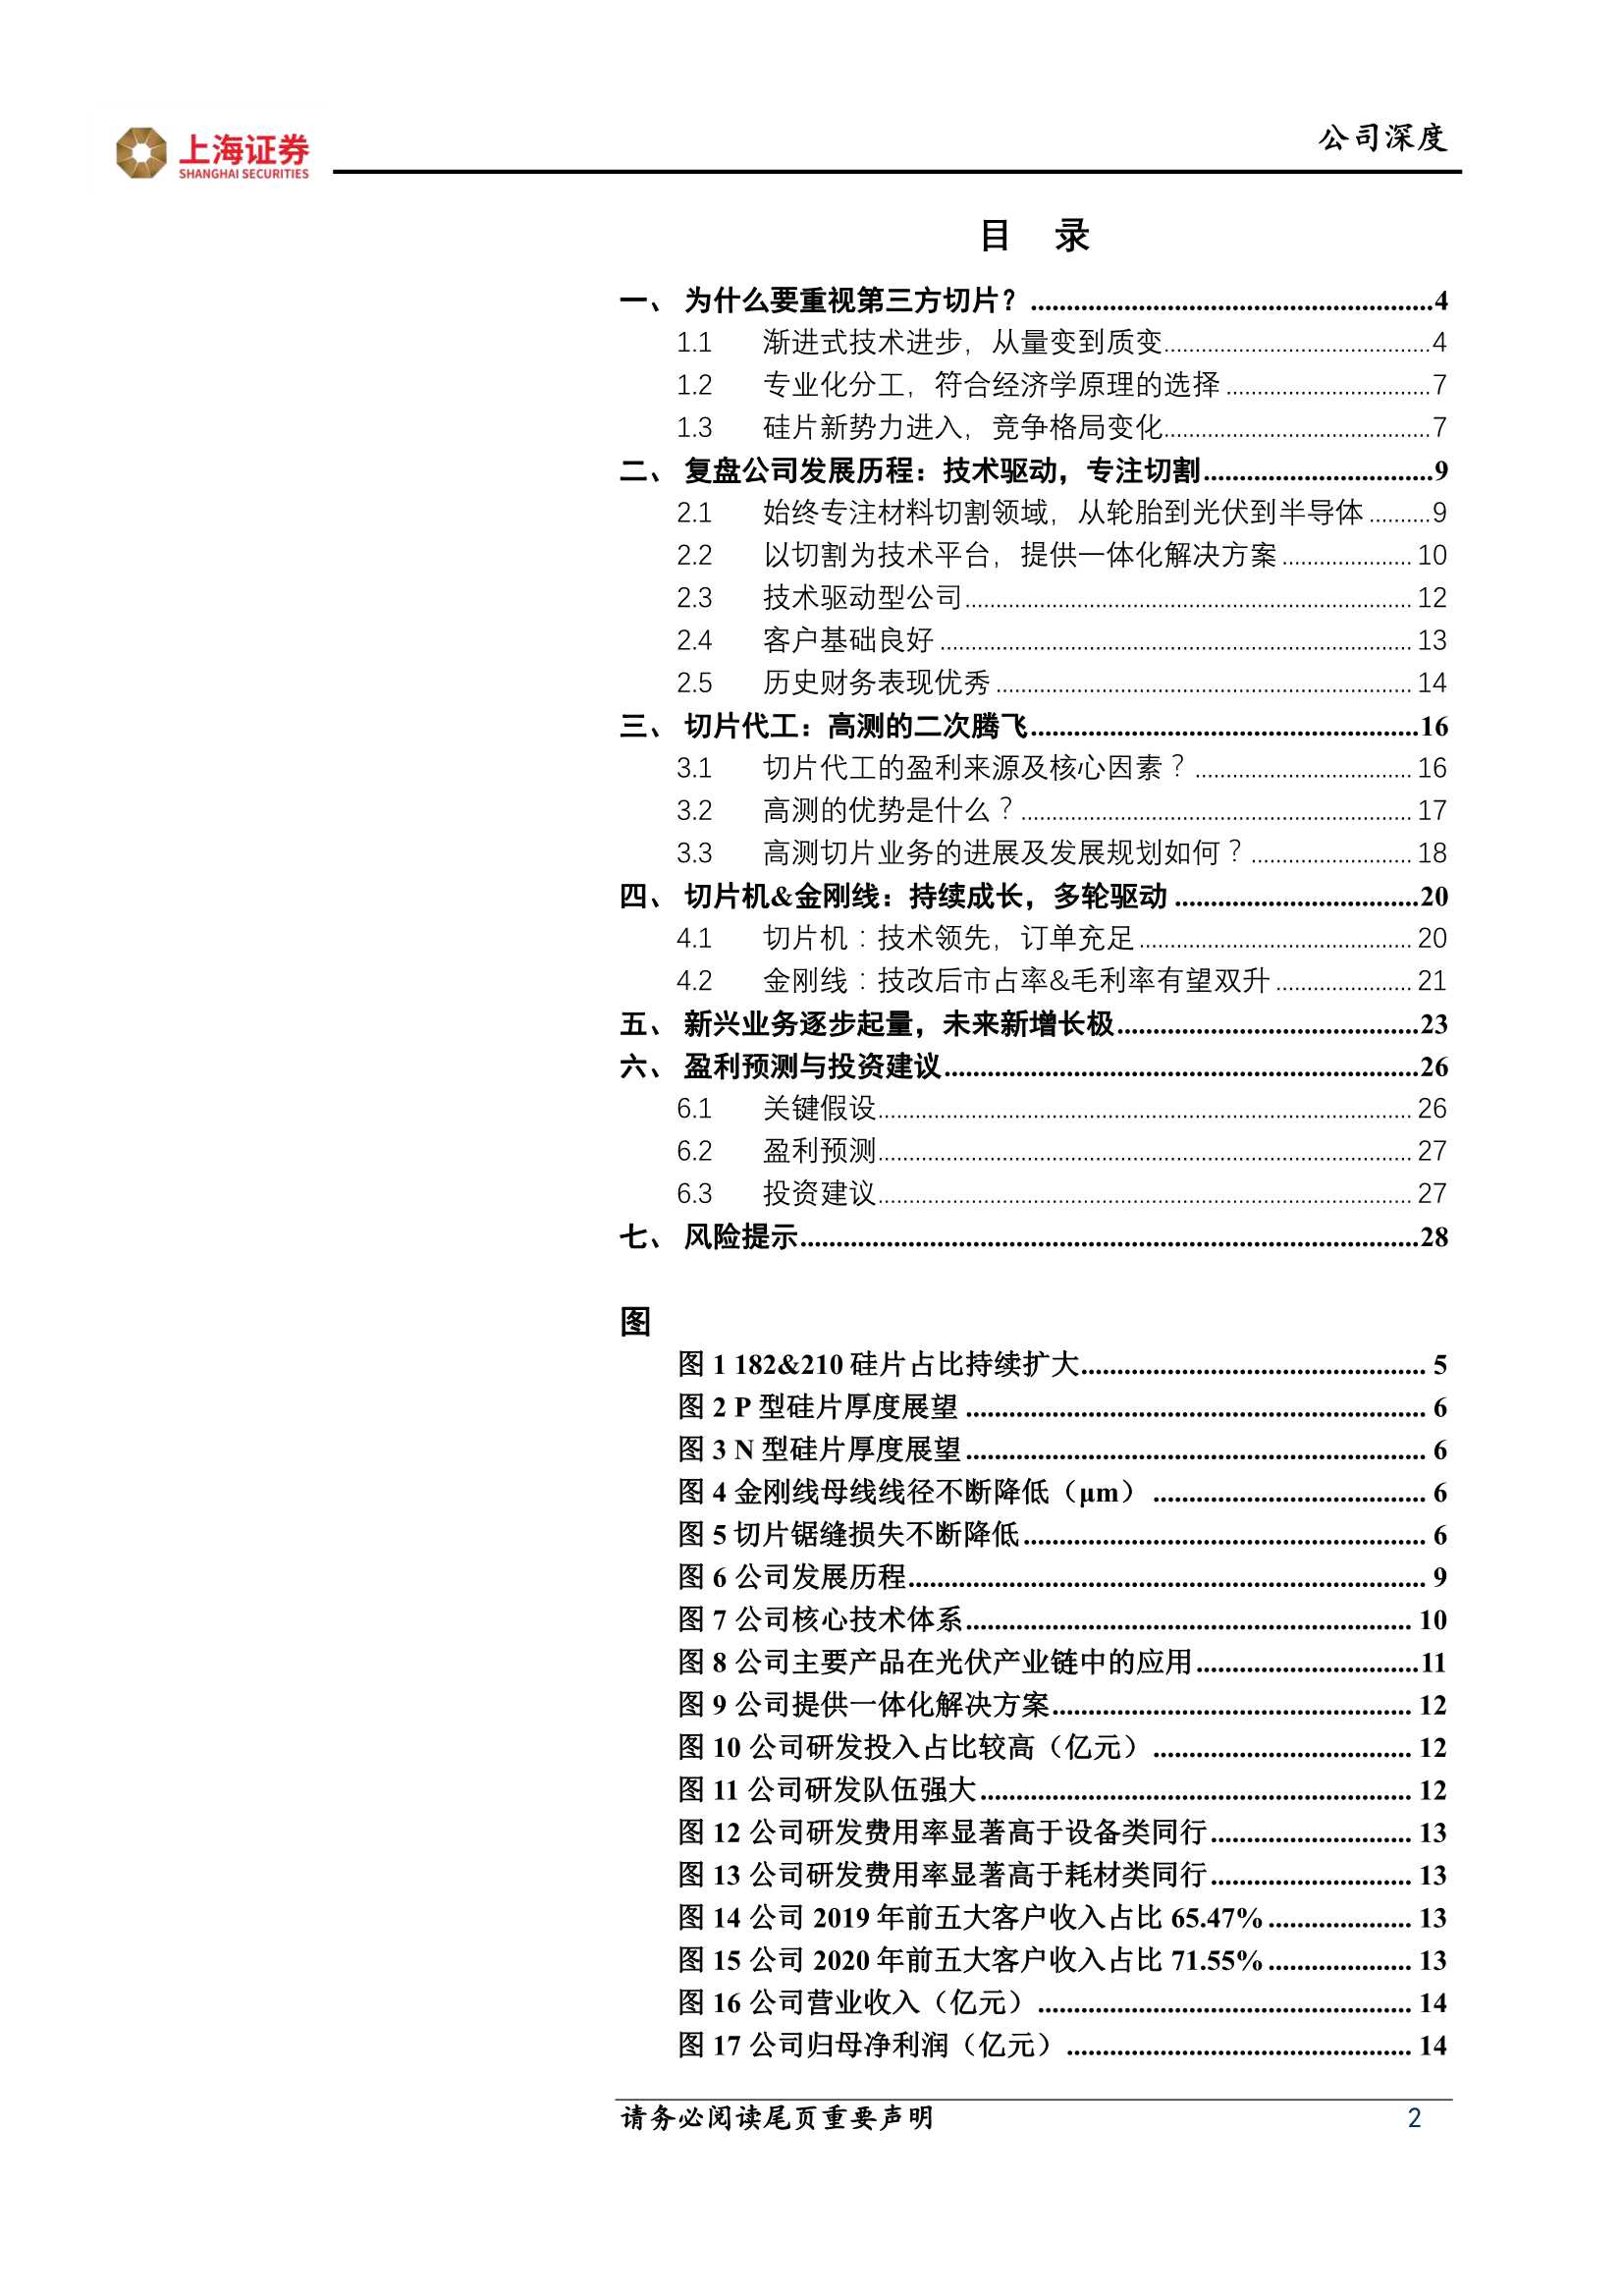 上海证券-高测股份-688556-技术红利 商业变革，切片龙头呼之欲出-20211123-30页